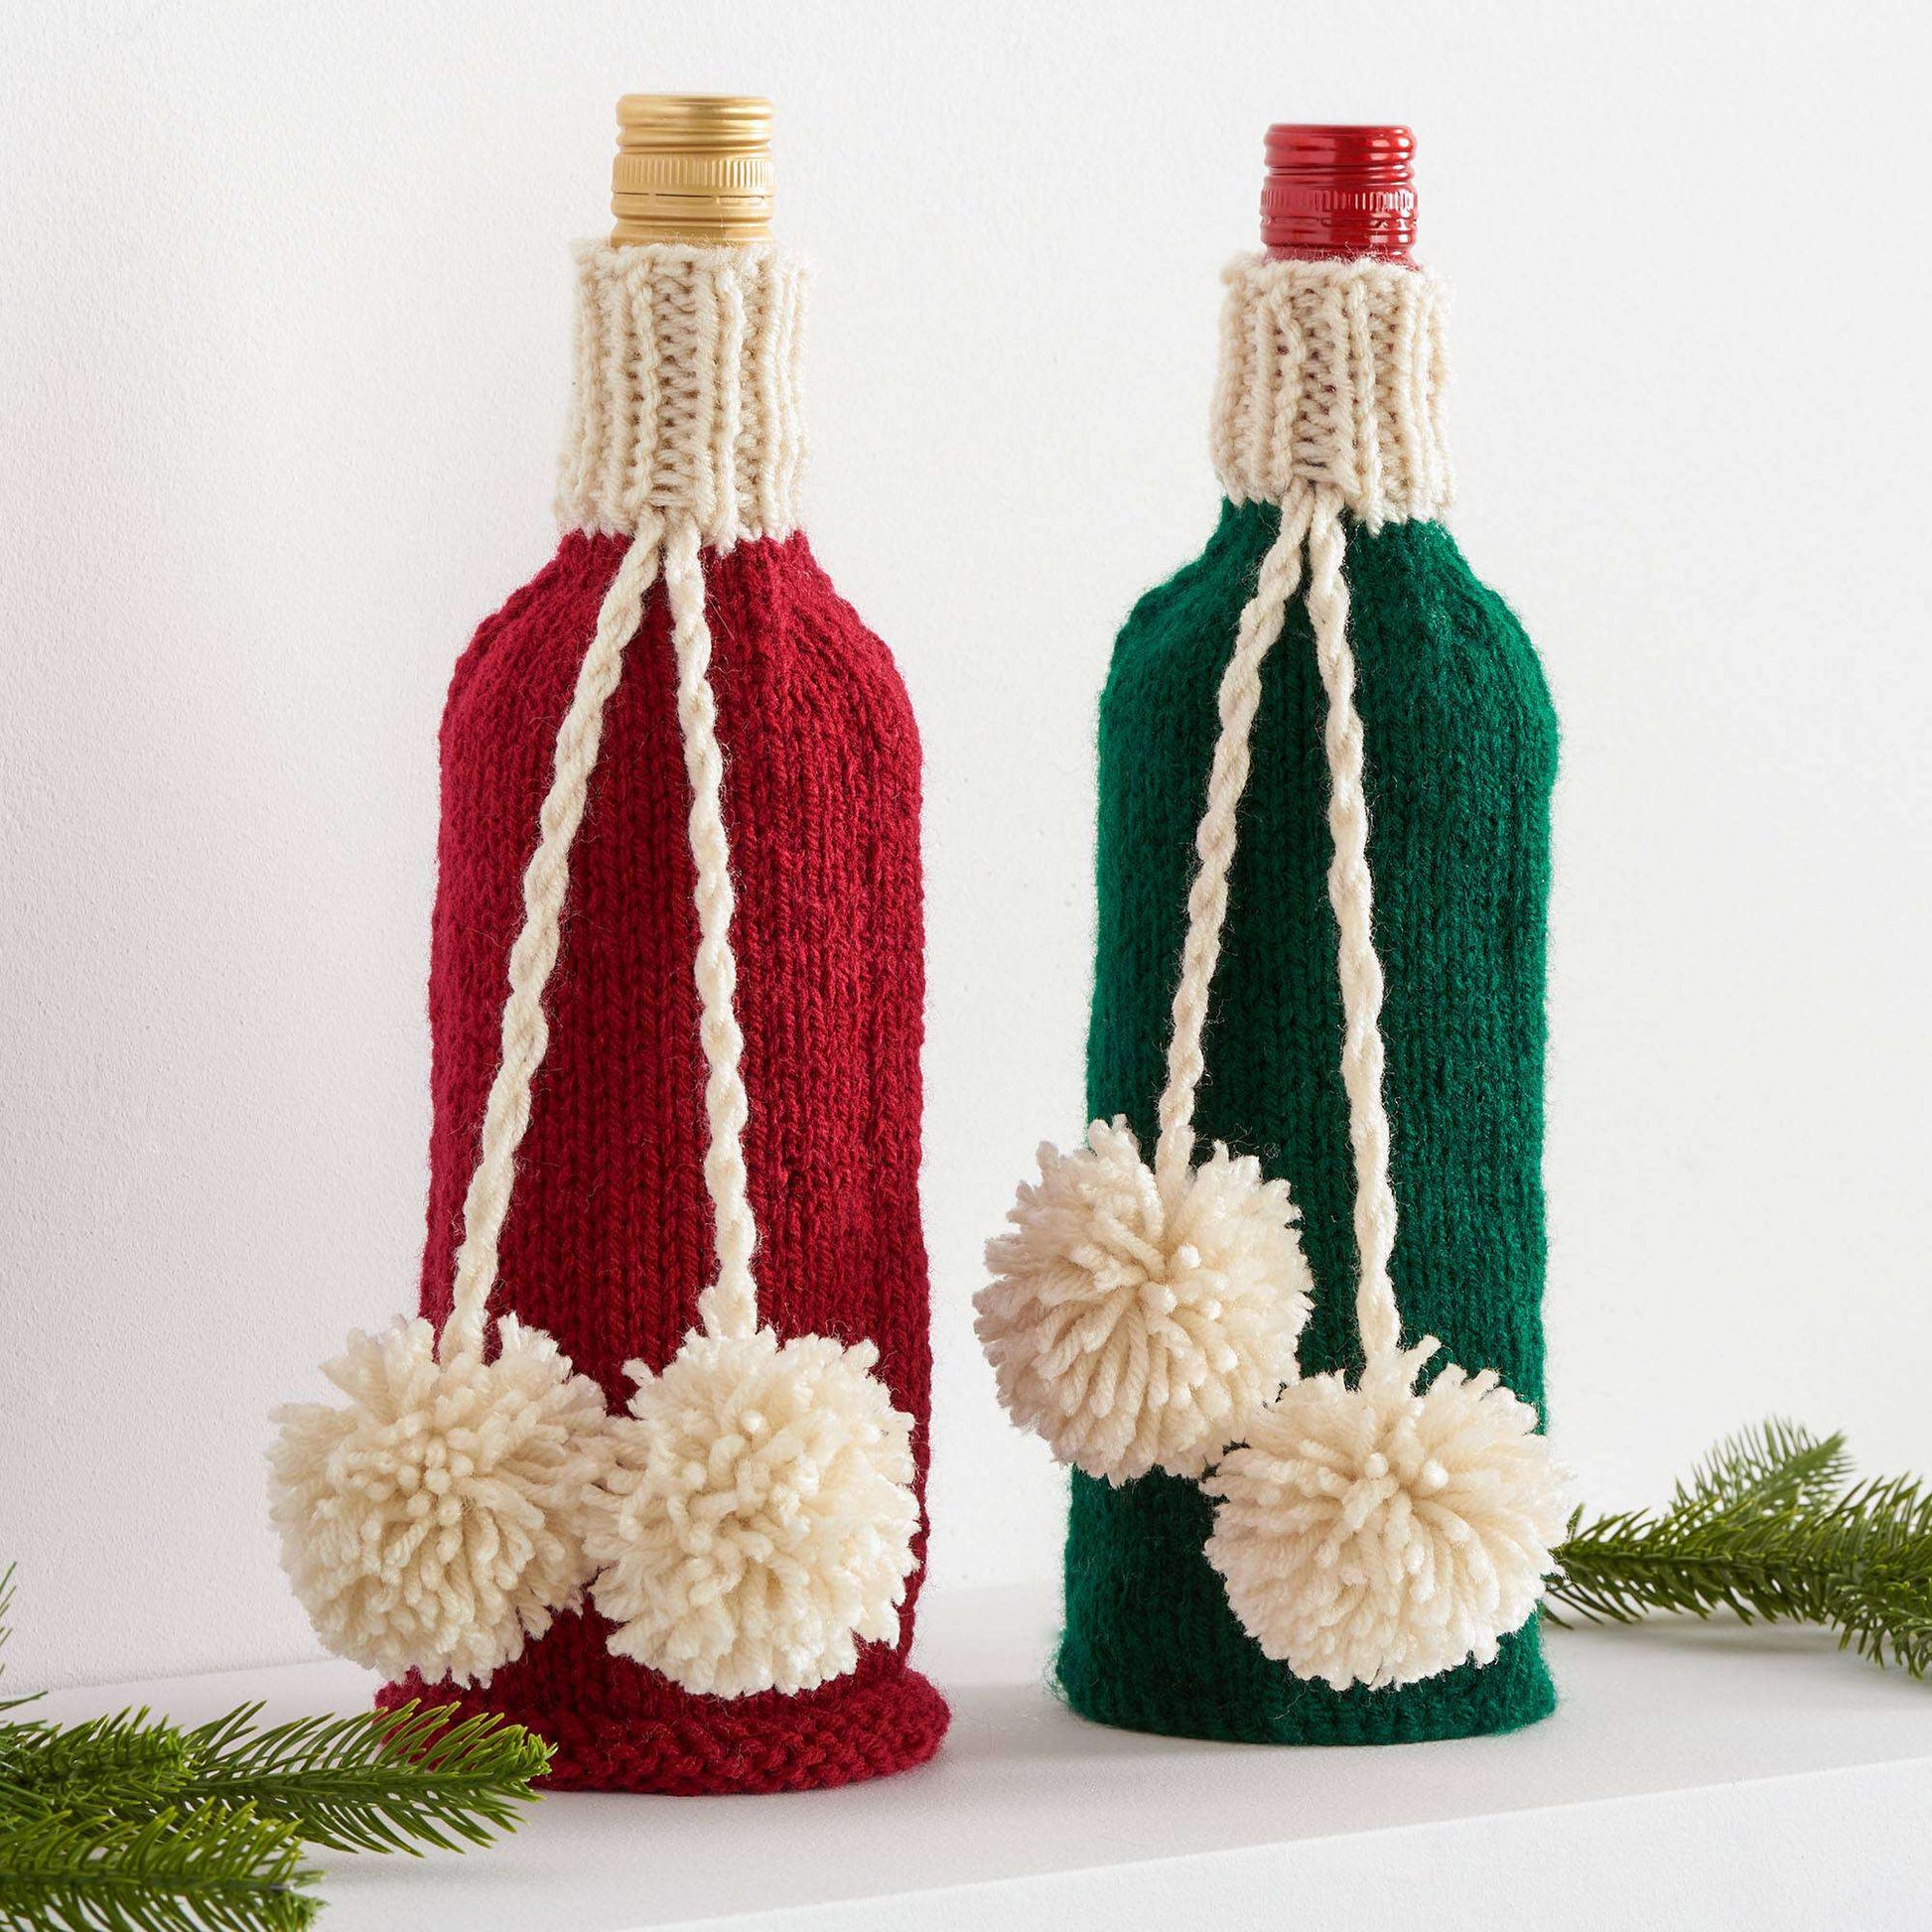 Free Red Heart Knit Gift Bottle Cozy Pattern